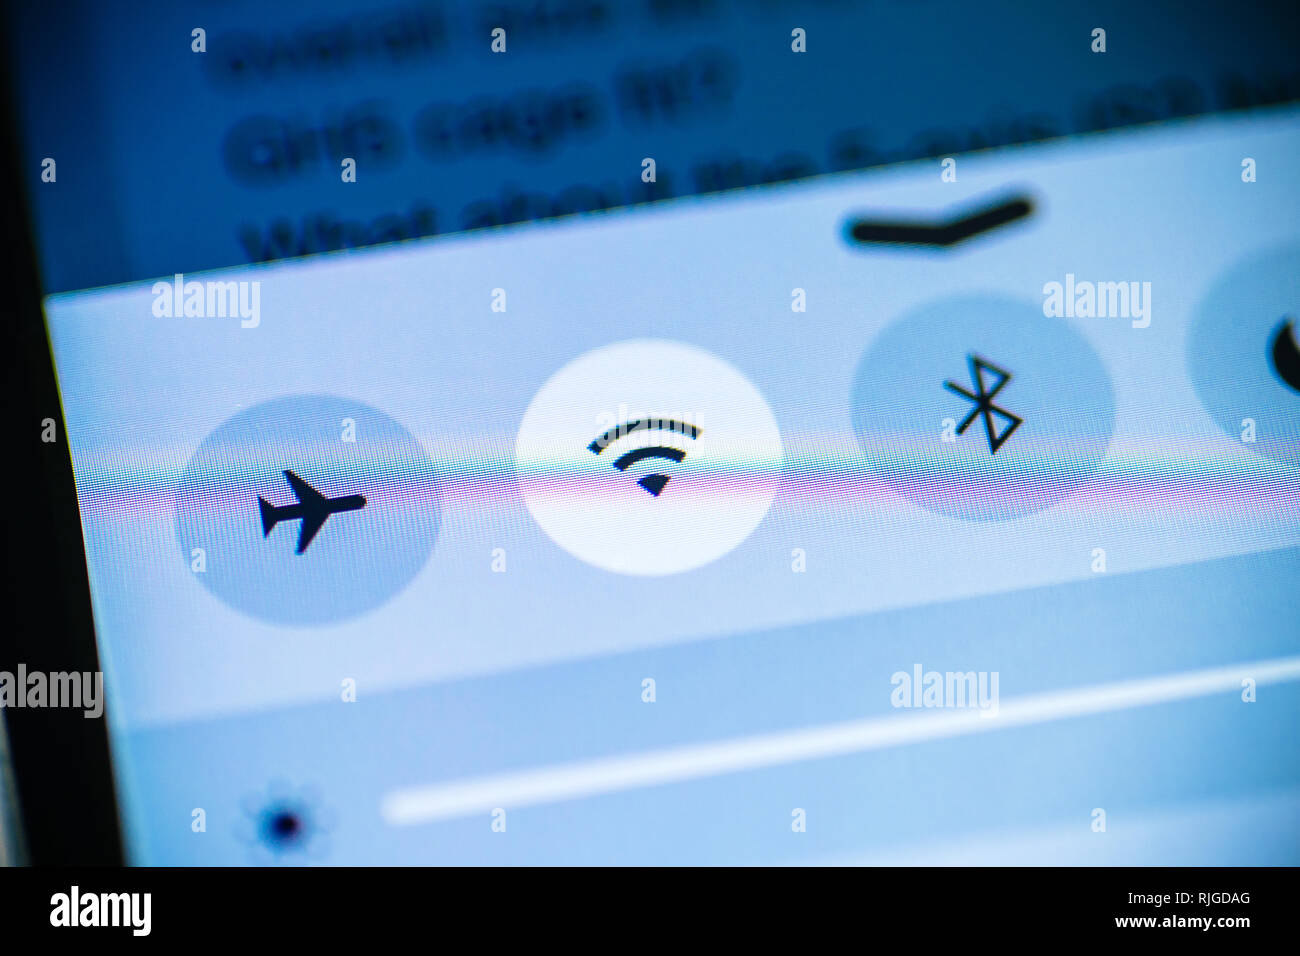 Connexion Wi-Fi au réseau local, le mode avion, les icônes Bluetooth sur le téléphone smartphone tablet écran d'affichage bleu - tonalité technologique Banque D'Images